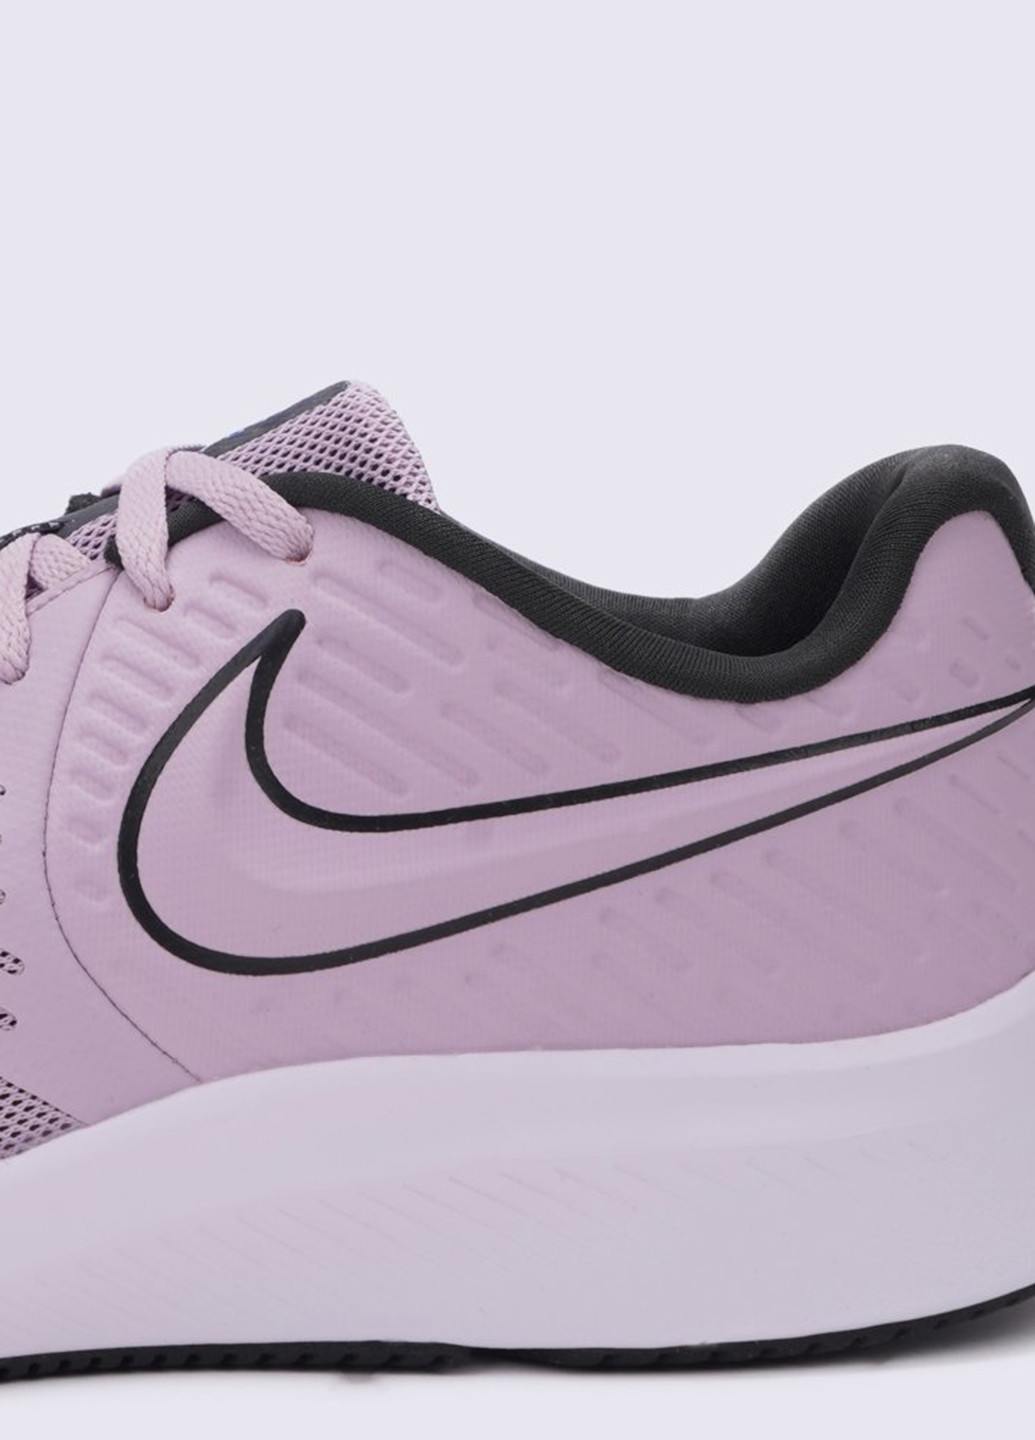 Розовые всесезонные кроссовки Nike Star Runner 2